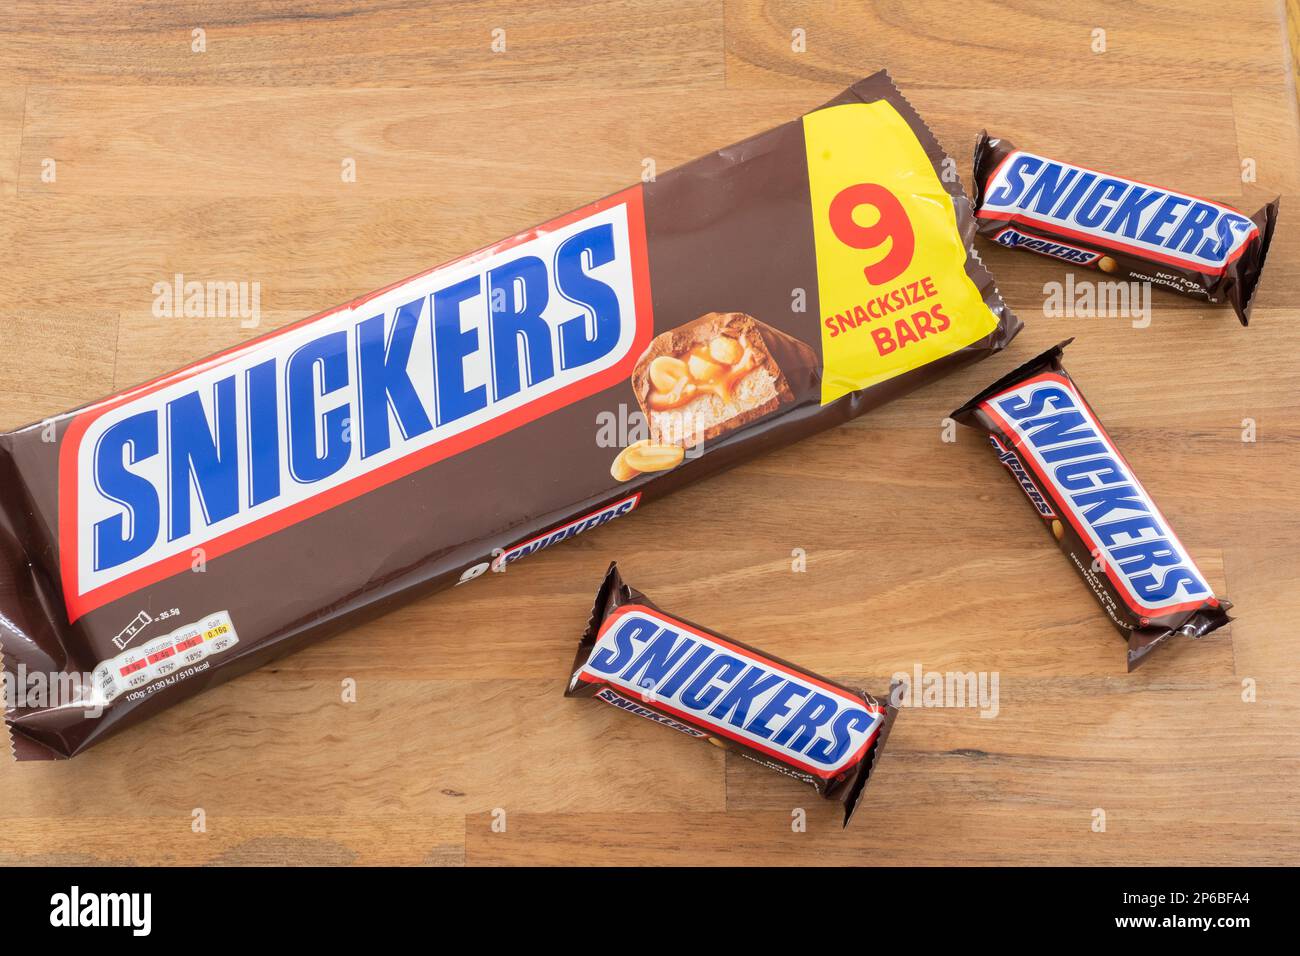 Snickers bar e un pacchetto snickers. Snickers è di proprietà di Mars, Incorporated. Tema: Snacking, snack food, mangiare malsano, bar industria del cioccolato Foto Stock